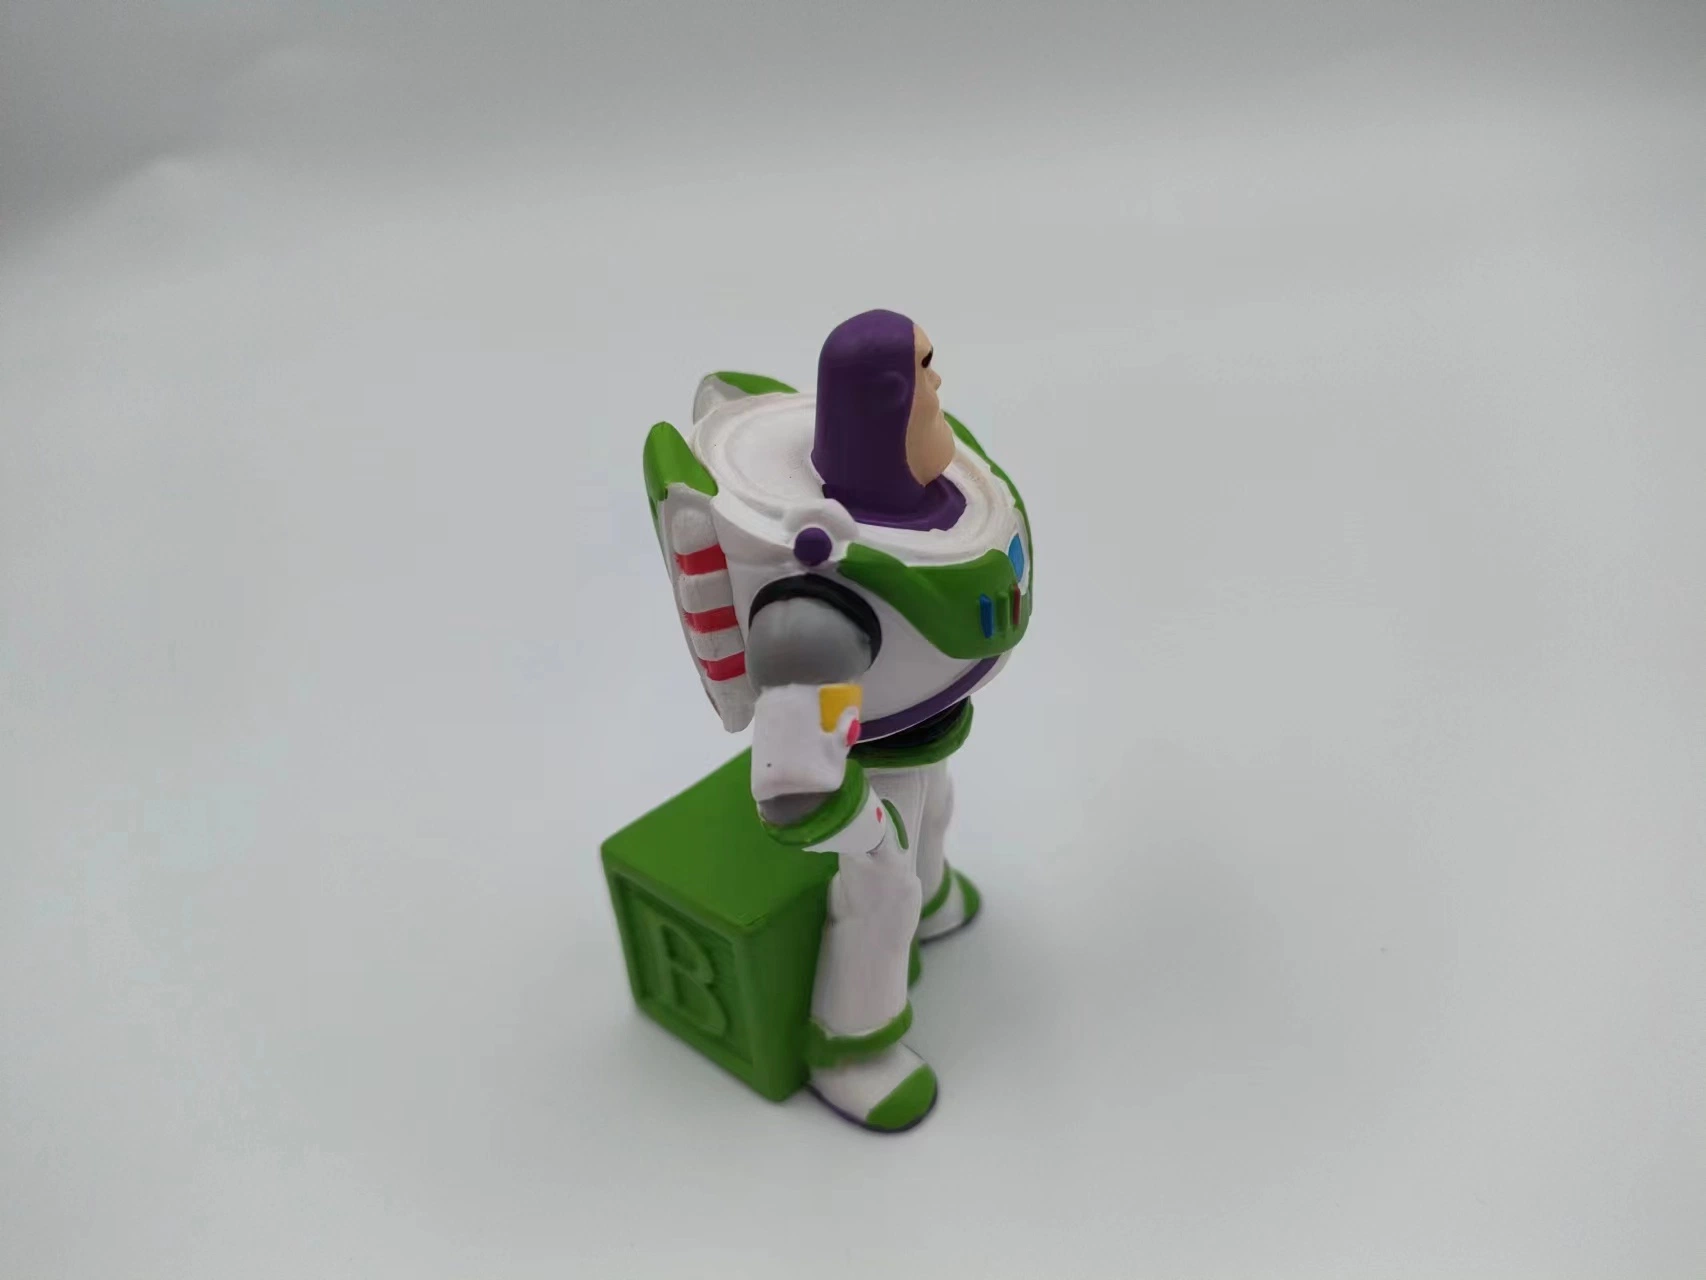 OEM Buzz Lightyear Personnage de dessin animé Assez drôle Mode Sculpture de simulation pour enfants Figurine d'animation Jouet